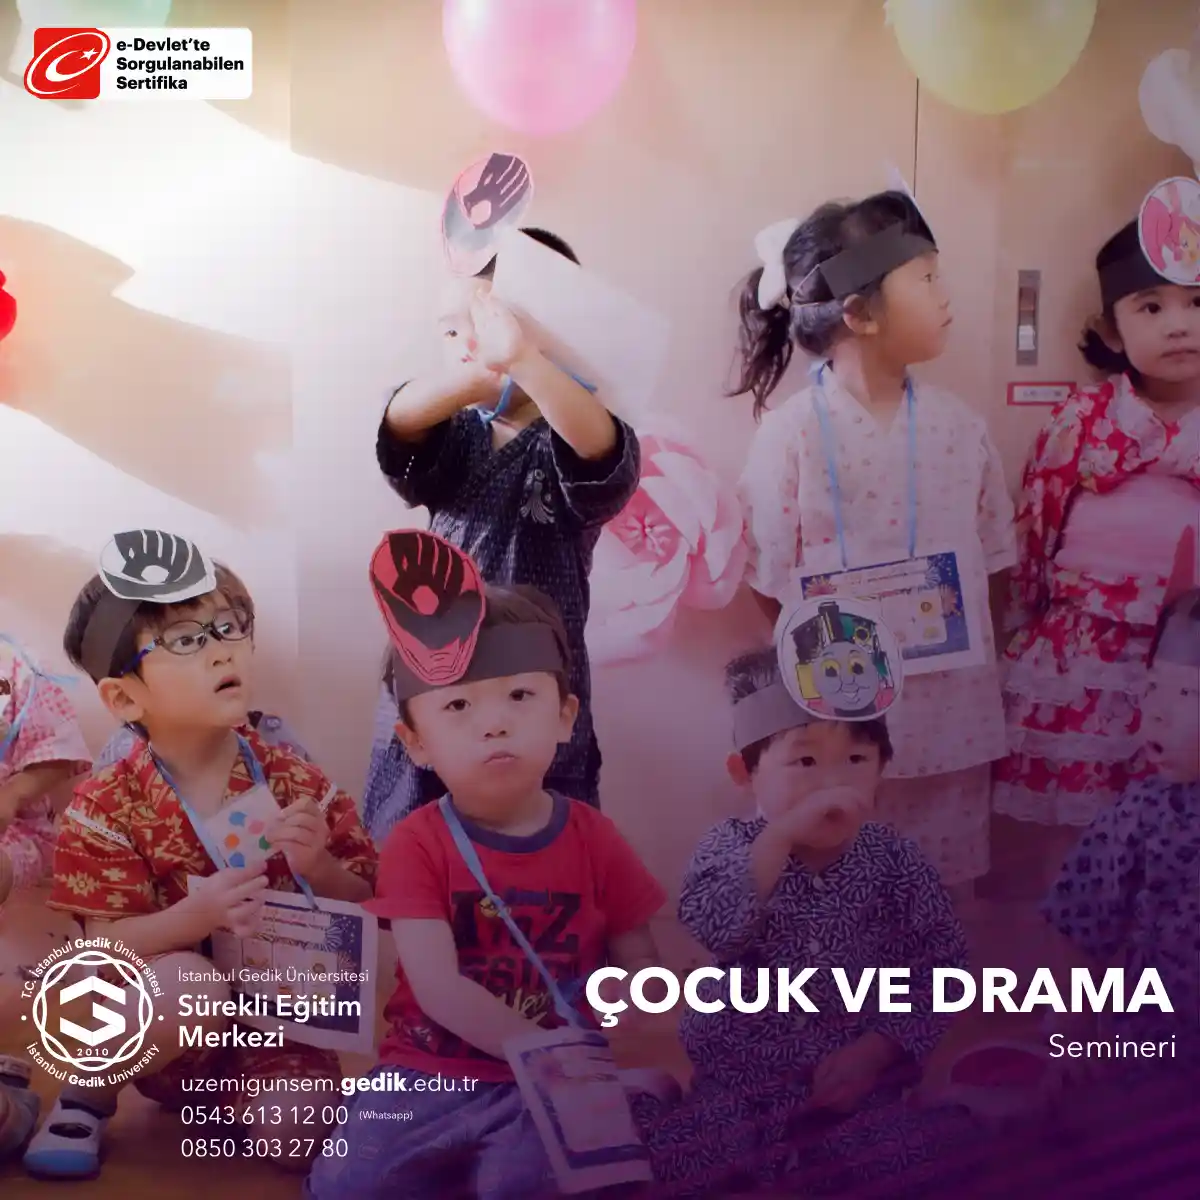 Bu seminer, drama sanatının çocukların gelişimine nasıl katkı sağlayabileceği ve öğrenme deneyimlerini nasıl zenginleştirebileceği konusunda bilgi sunar.